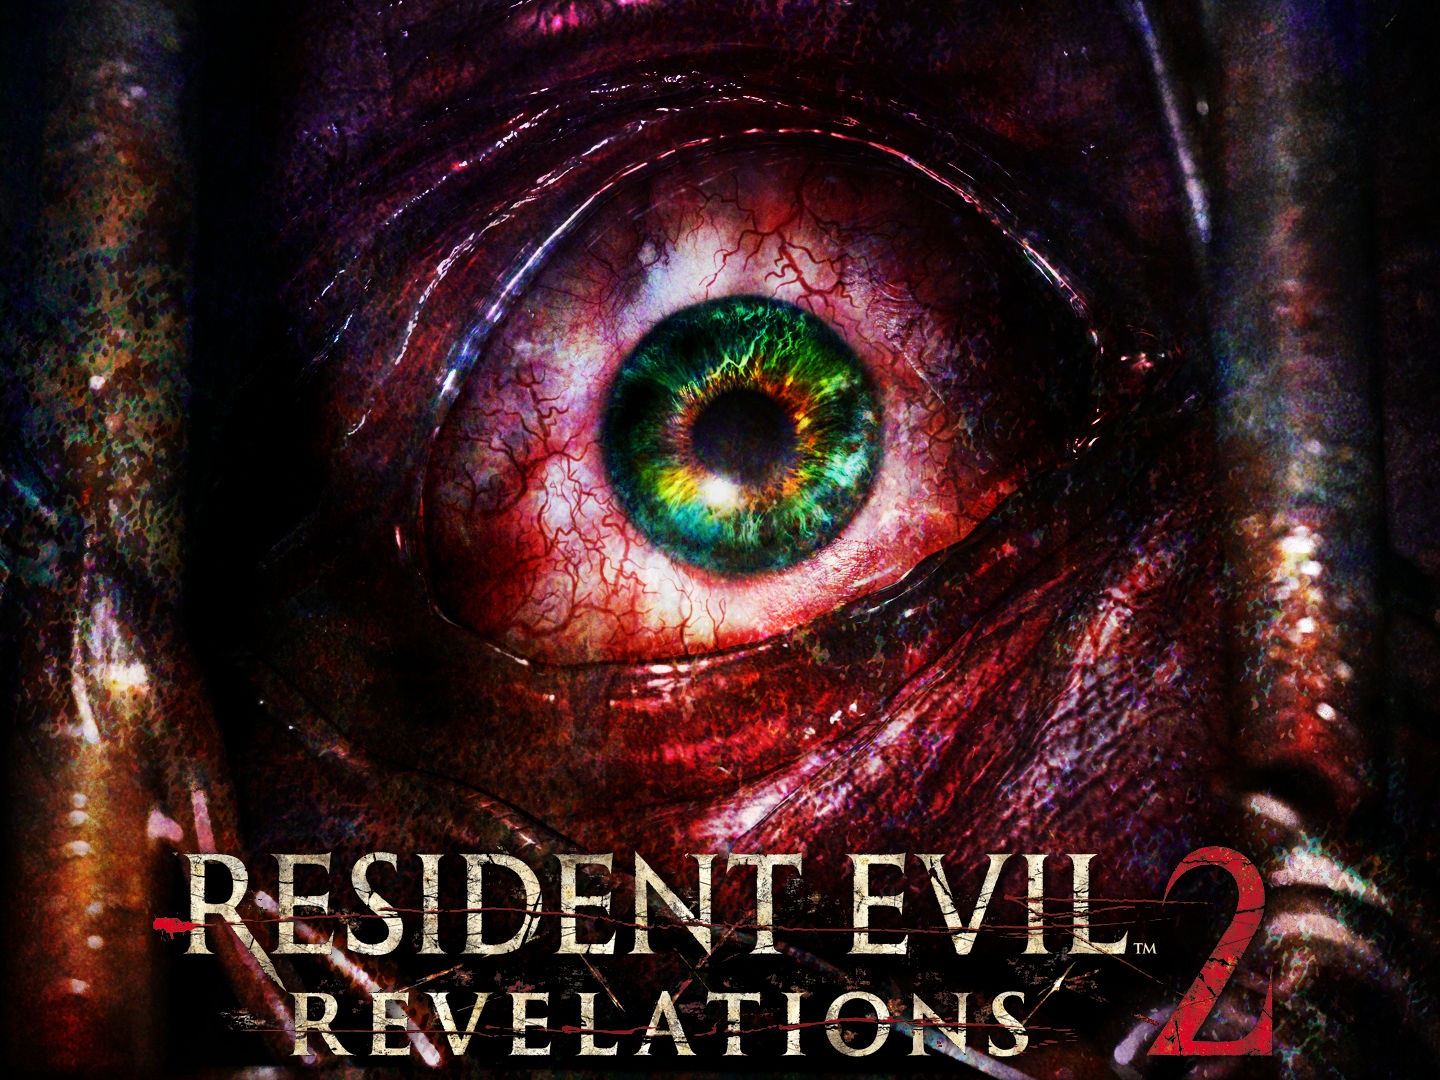 Detonado Resident Evil Code Veronica X, PDF, Resident Evil